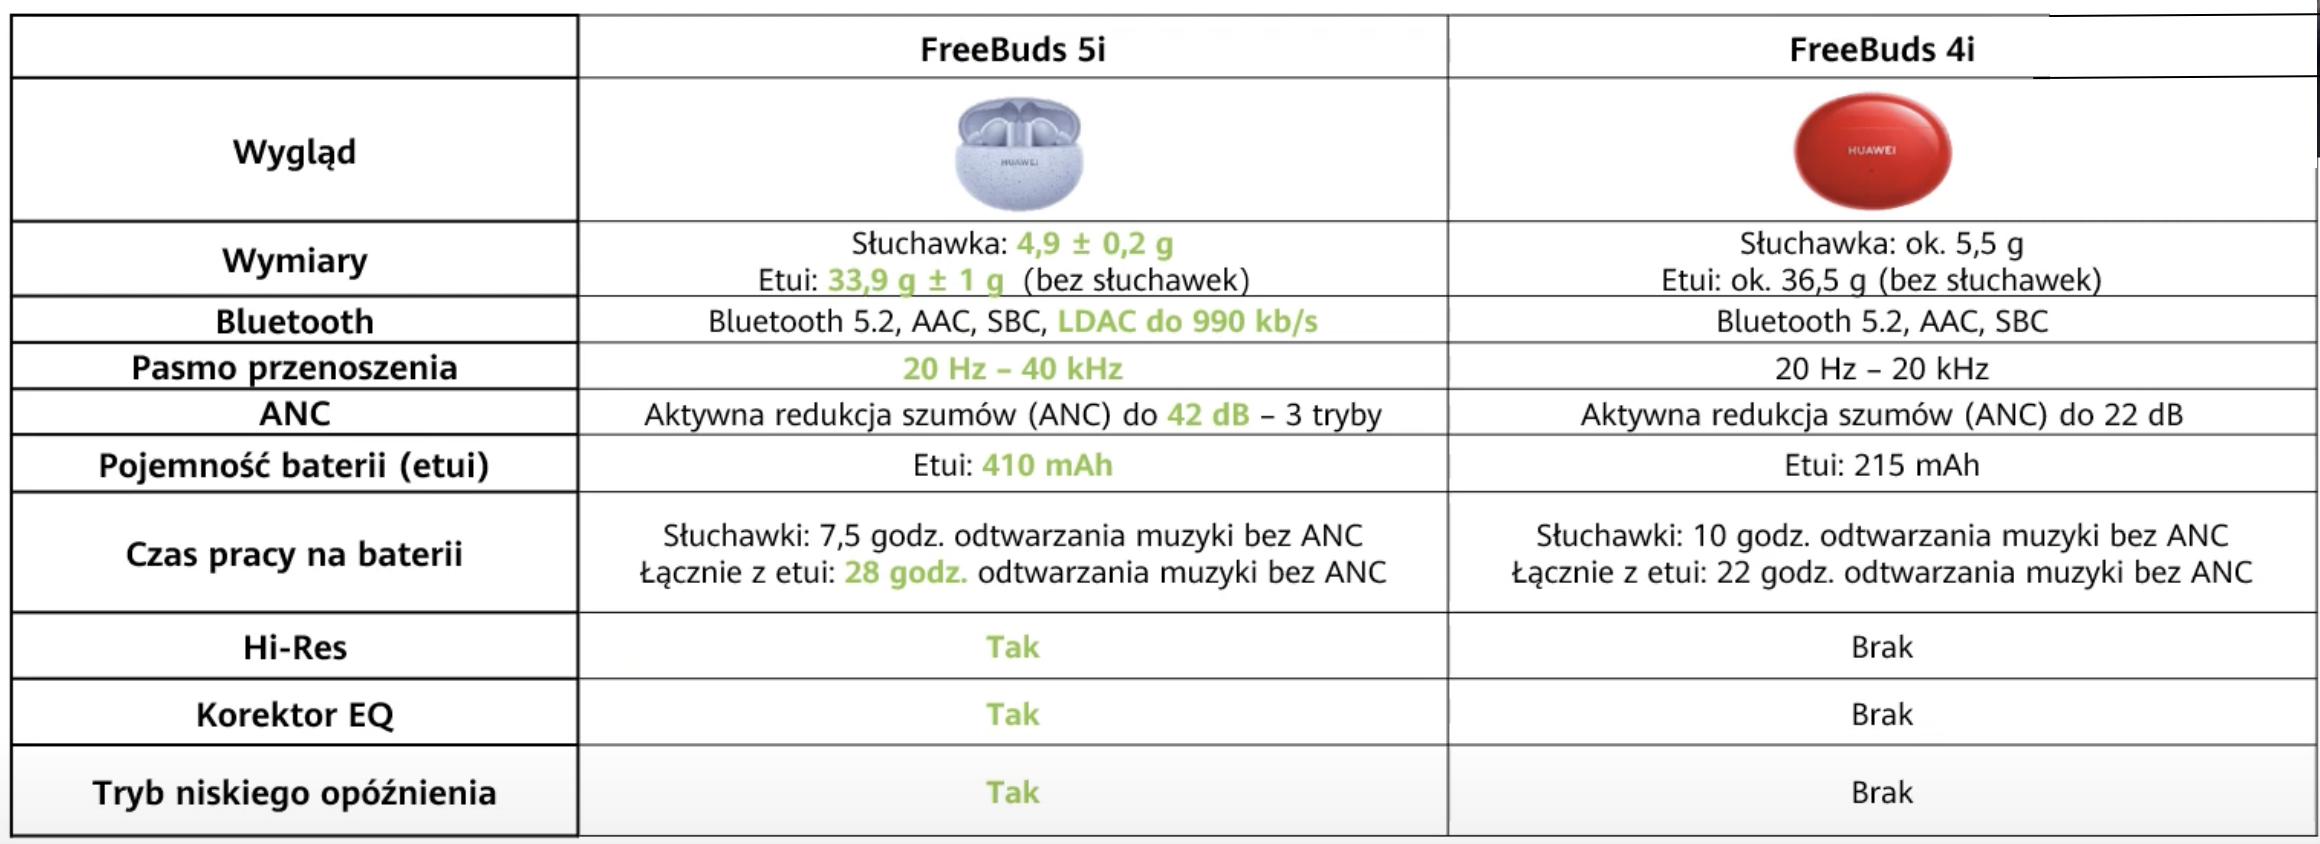 Porównanie FreeBuds 5i i FreeBuds 4i